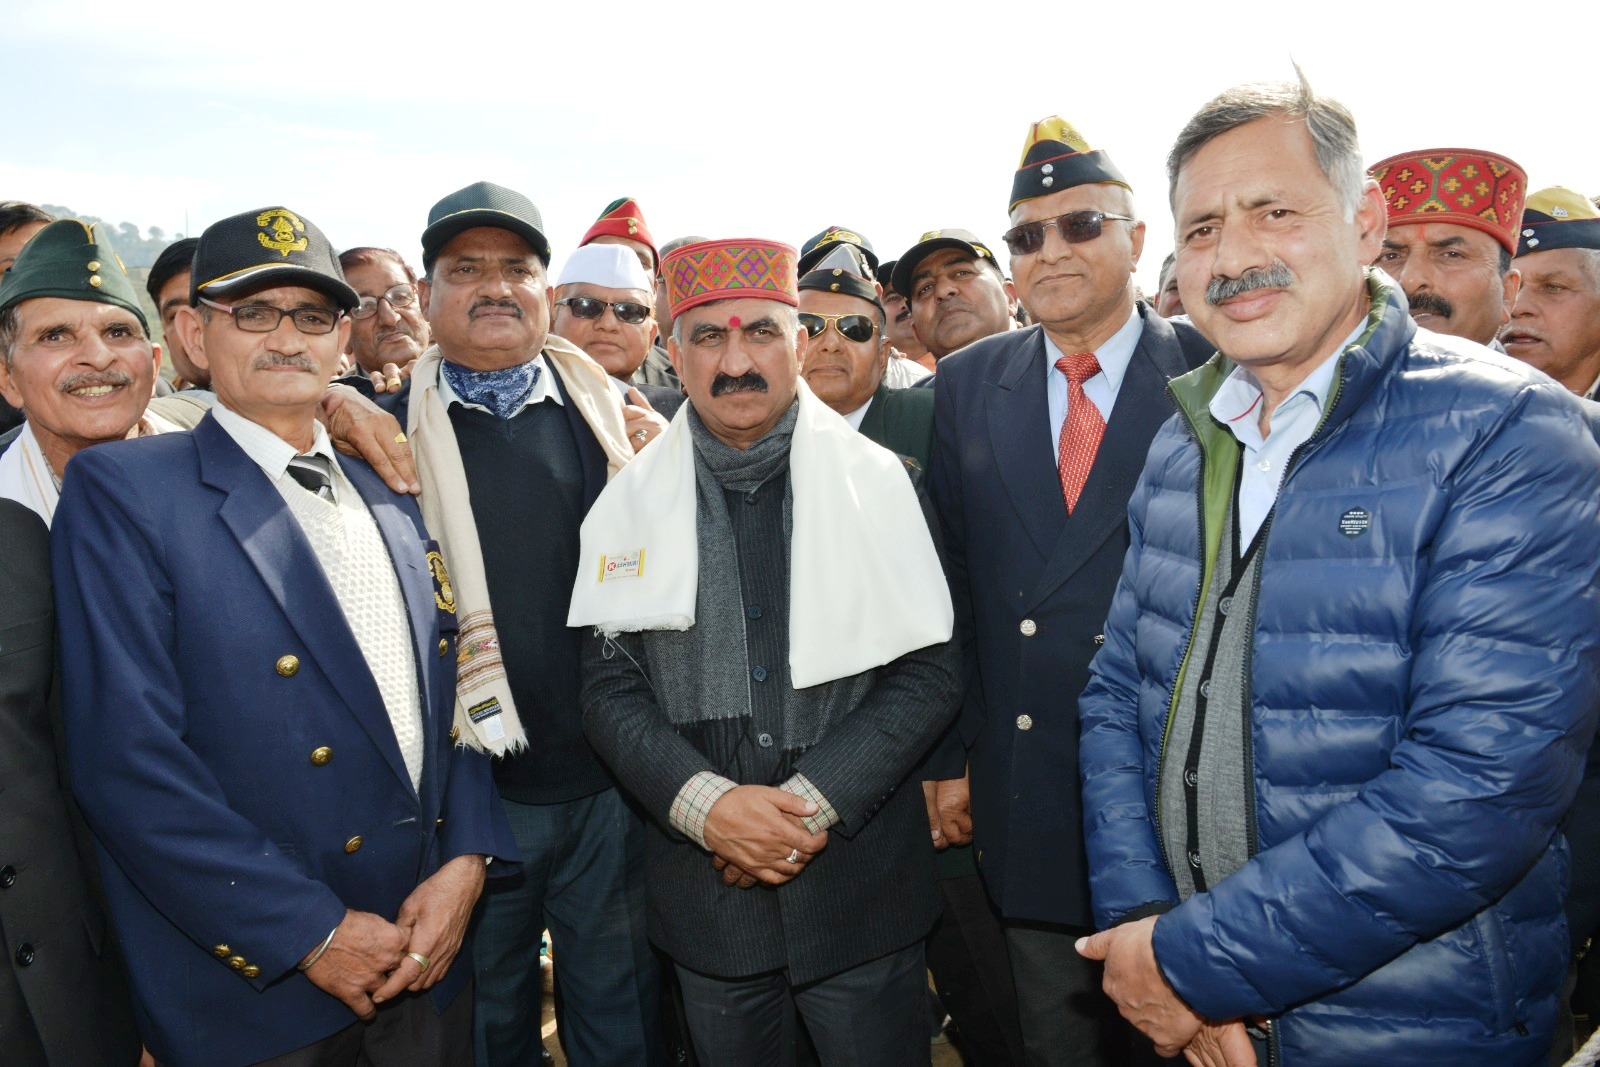 जनता के दिल में सीधे उतर रही मुख्यमंत्री ठाकुर सुखविंदर सिंह सुक्खू की सादगी